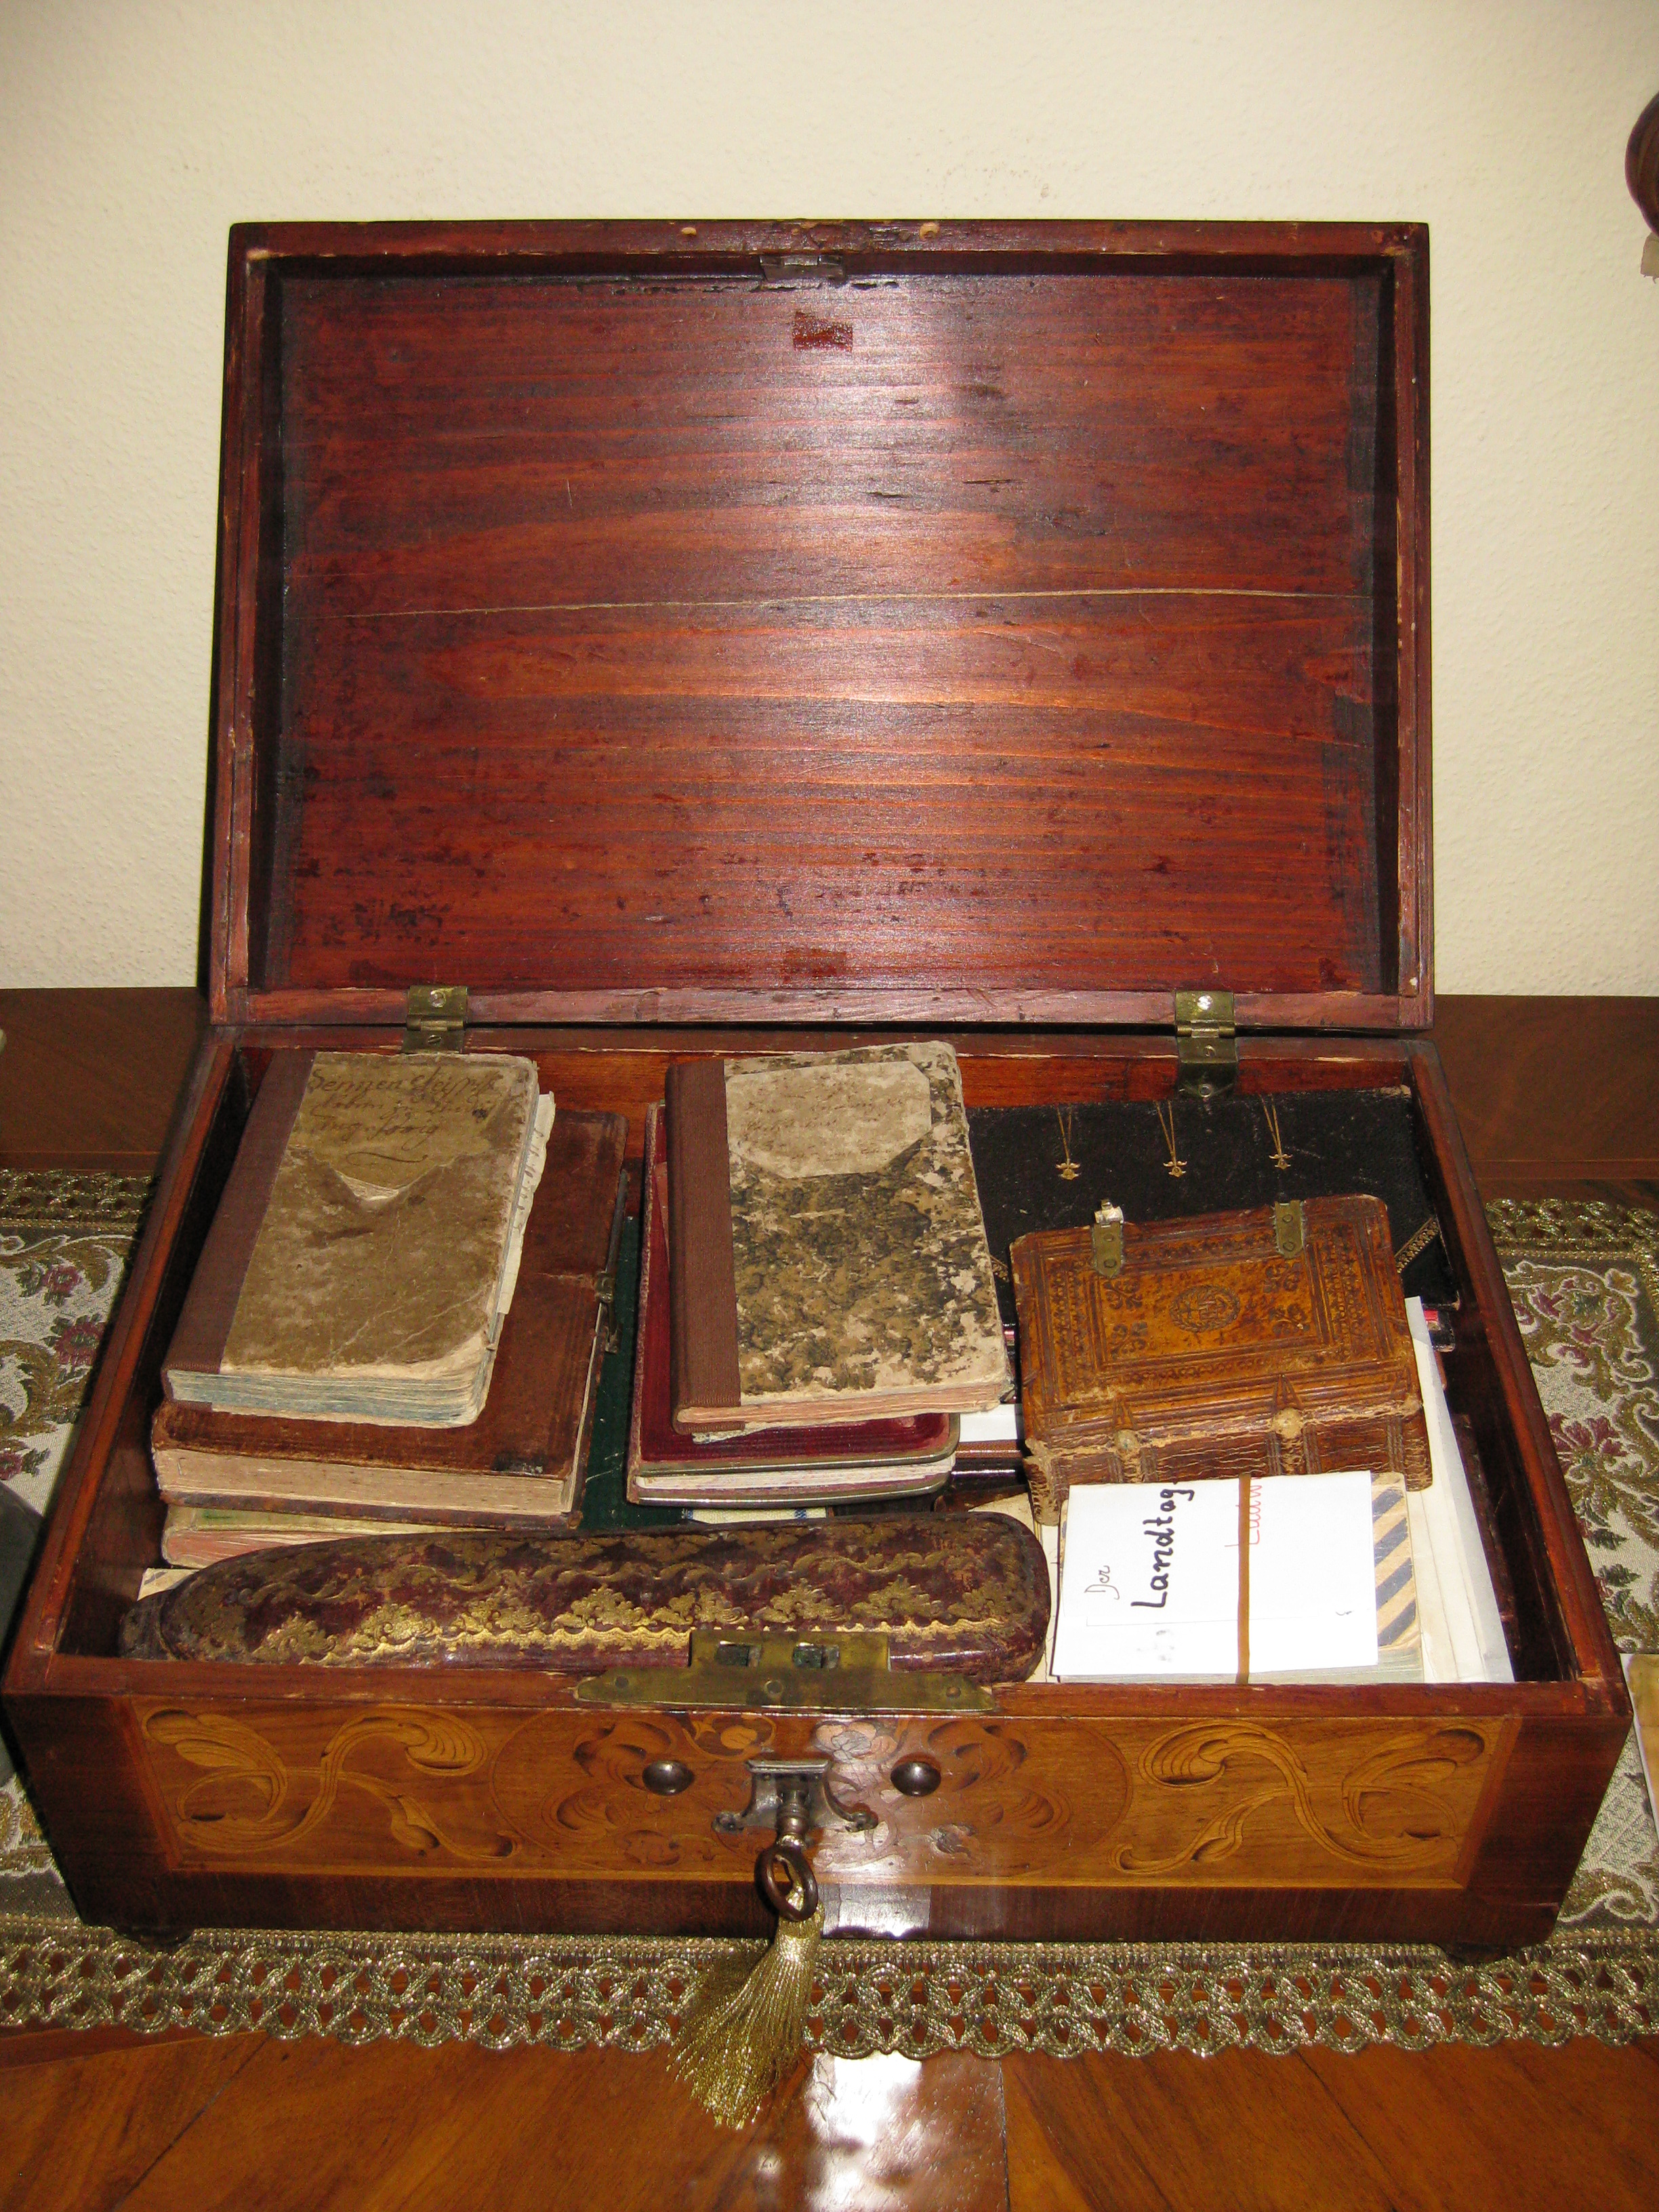 Archive Box